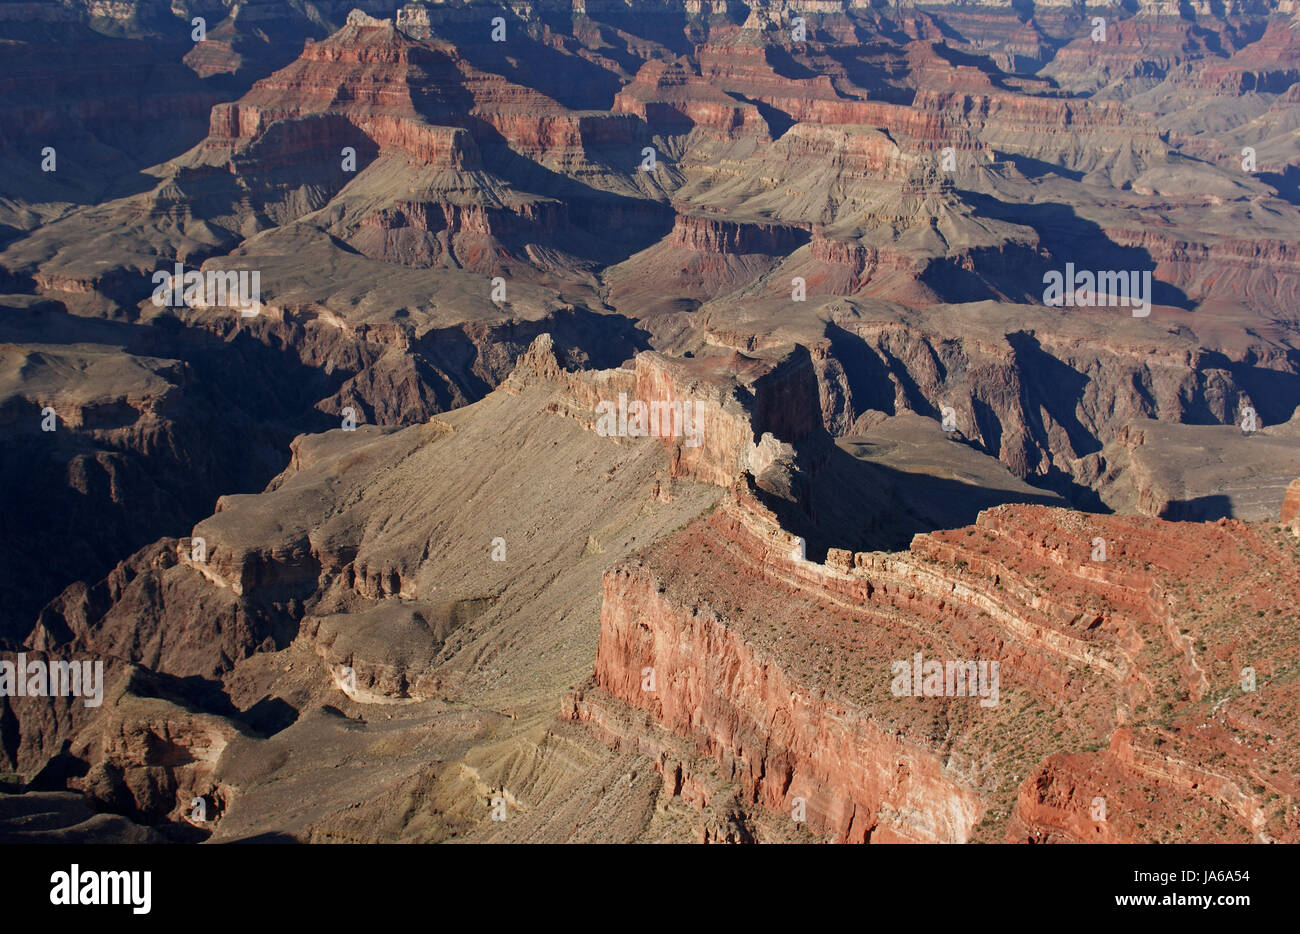 desert, wasteland, america, arizona, southwest, scenery, countryside, nature, Stock Photo